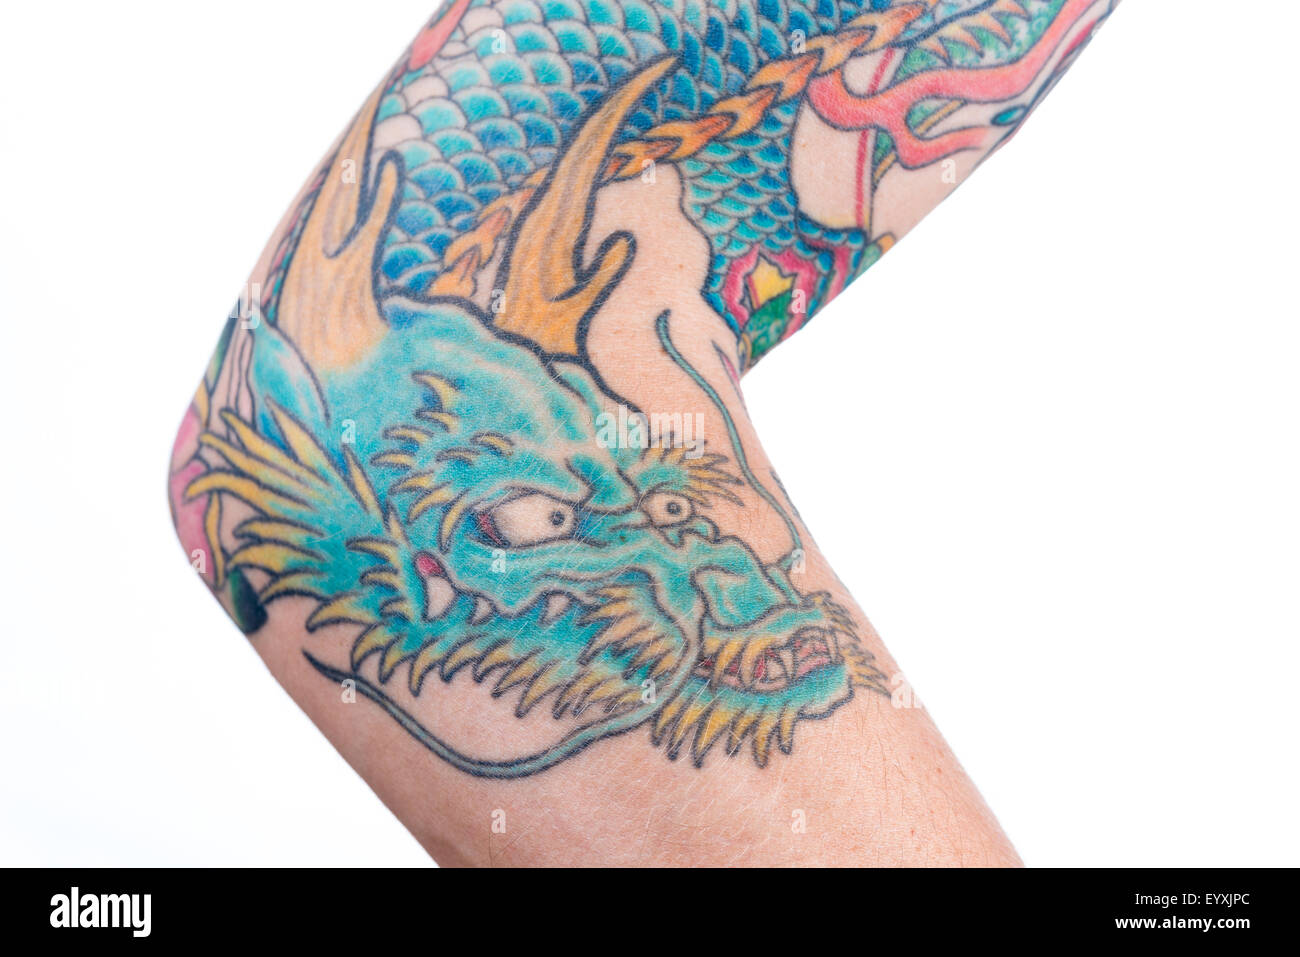 Eine detaillierte Aufnahme eines blau/grünen Drachen tattoo im japanischen Stil auf den Unterarm, Ellenbogen und Bizeps eines weißen Mannes isoliert auf einem wh Stockfoto